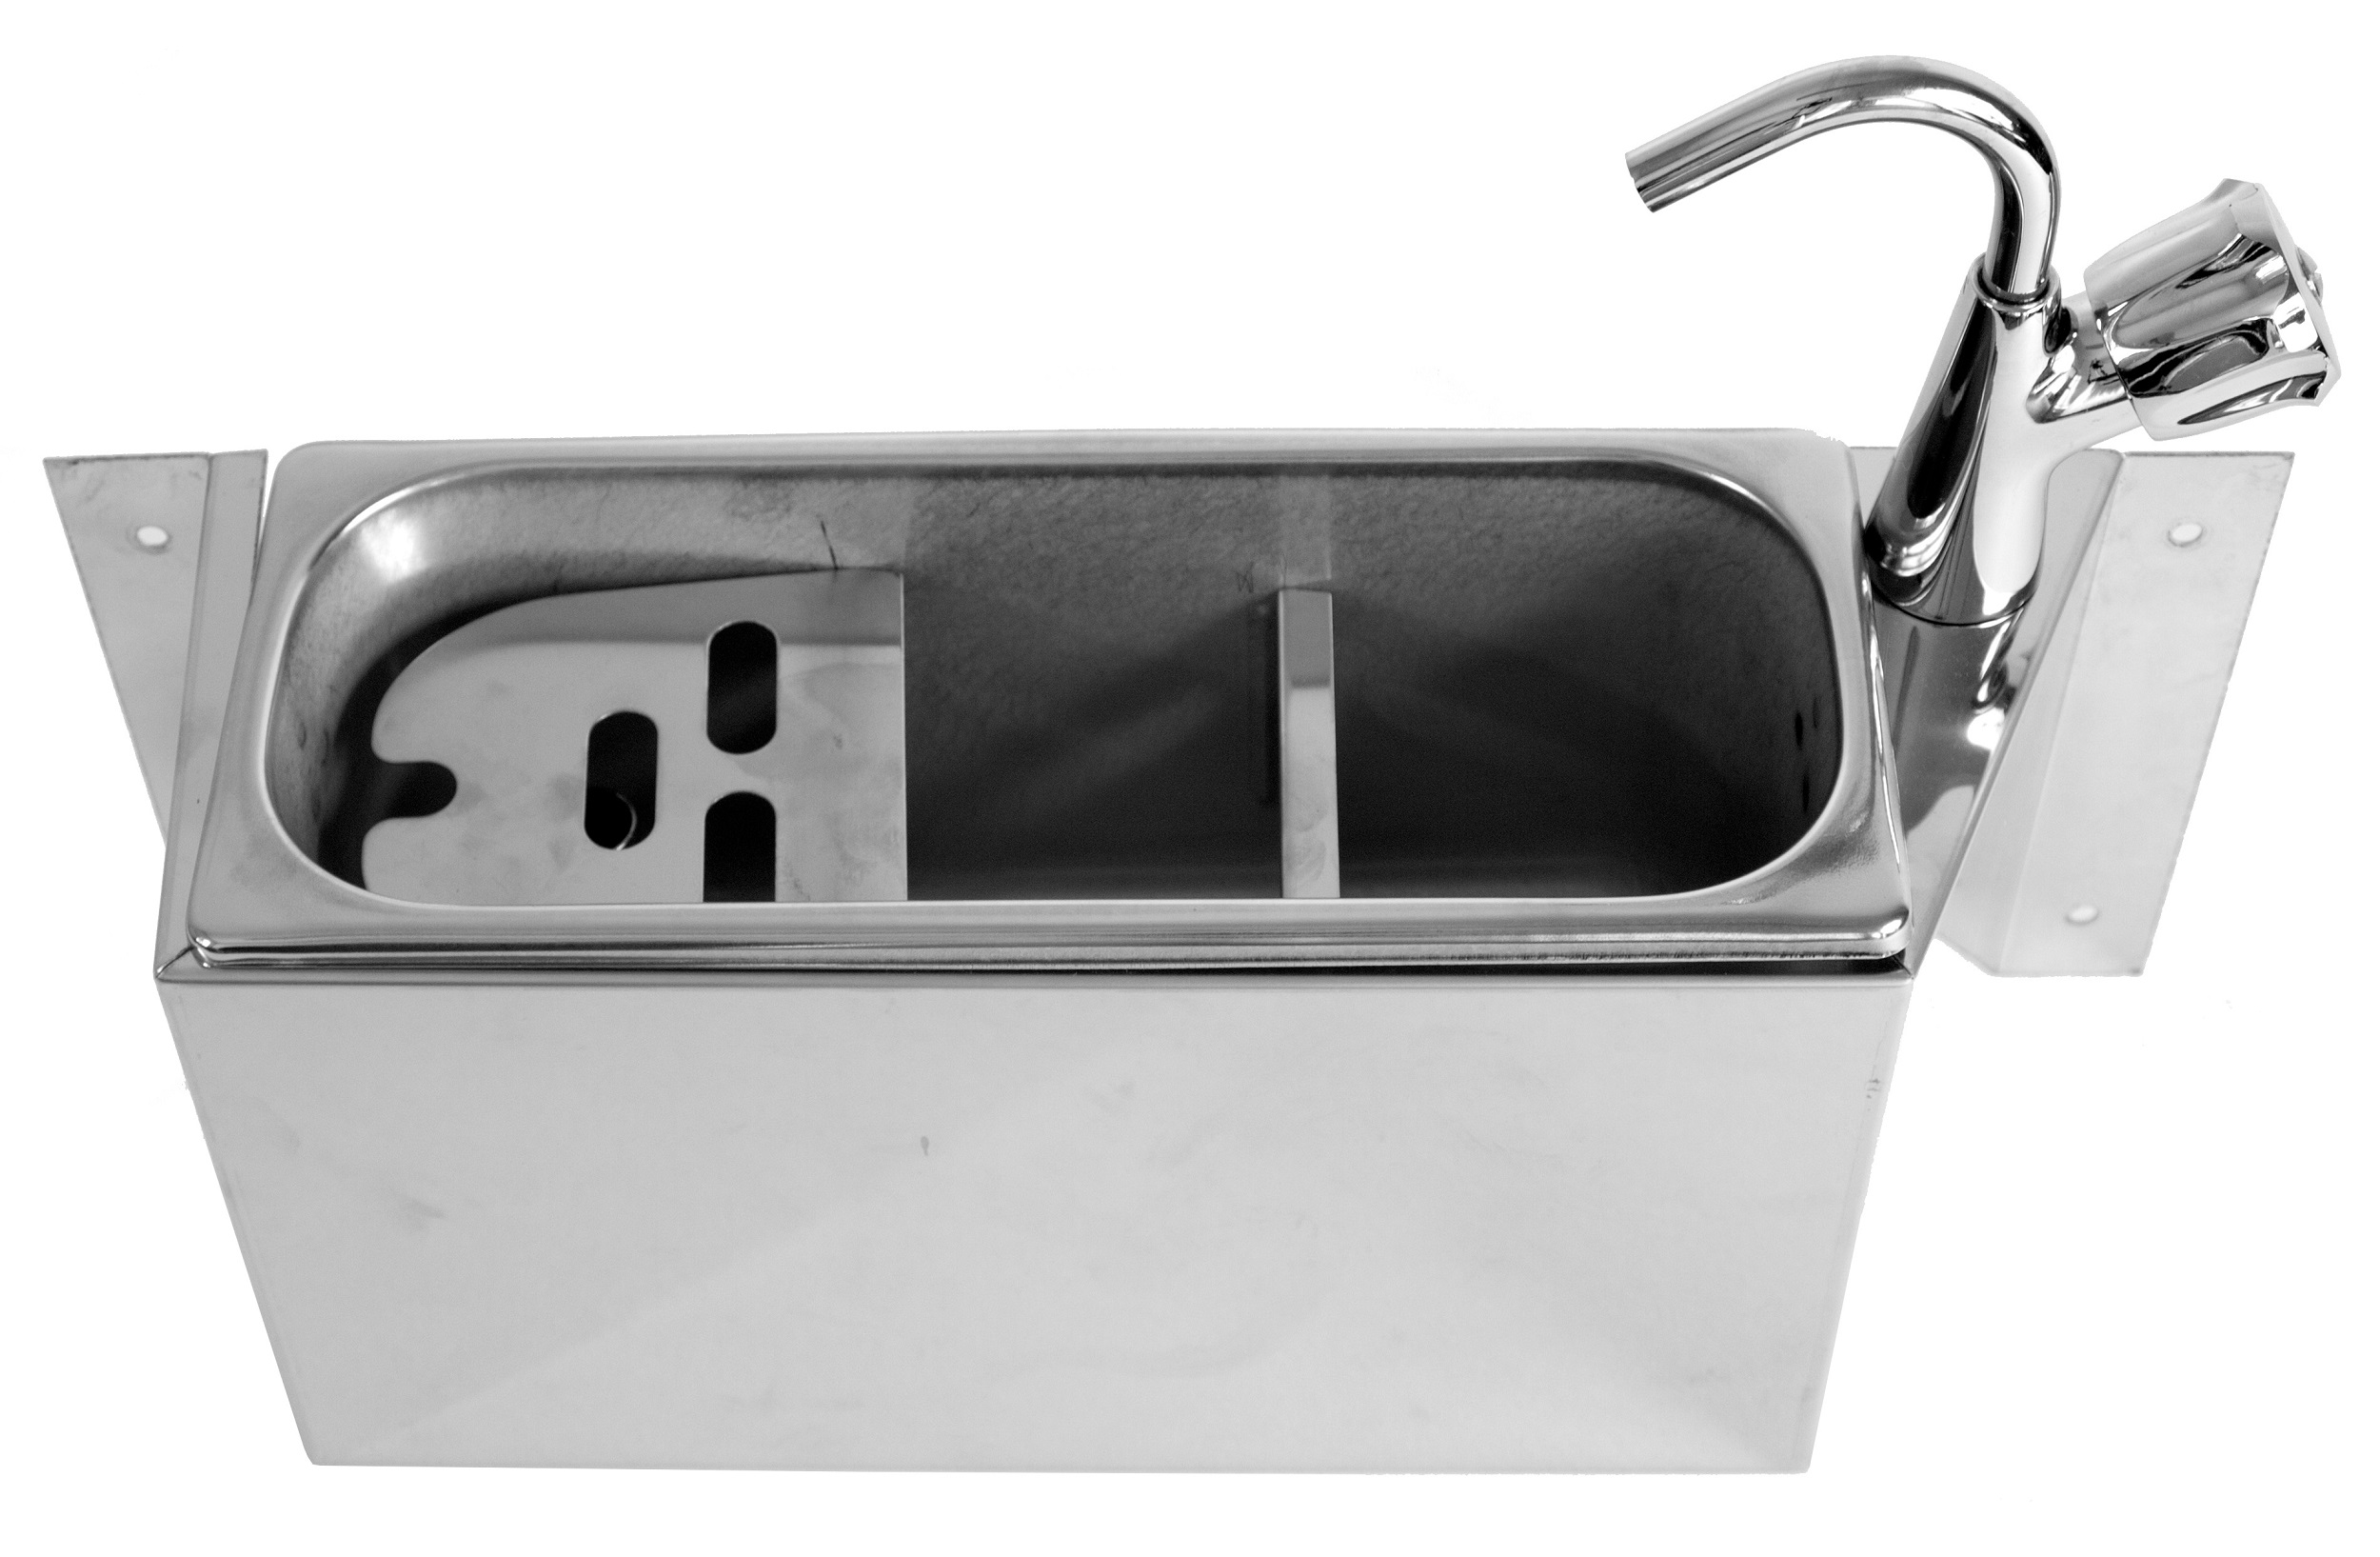 Portionierspüle mit Wasserhahn - 380x120x(h)150mm - Inkl. Wasserablaufloch, Wasseranschluss und Standrohr